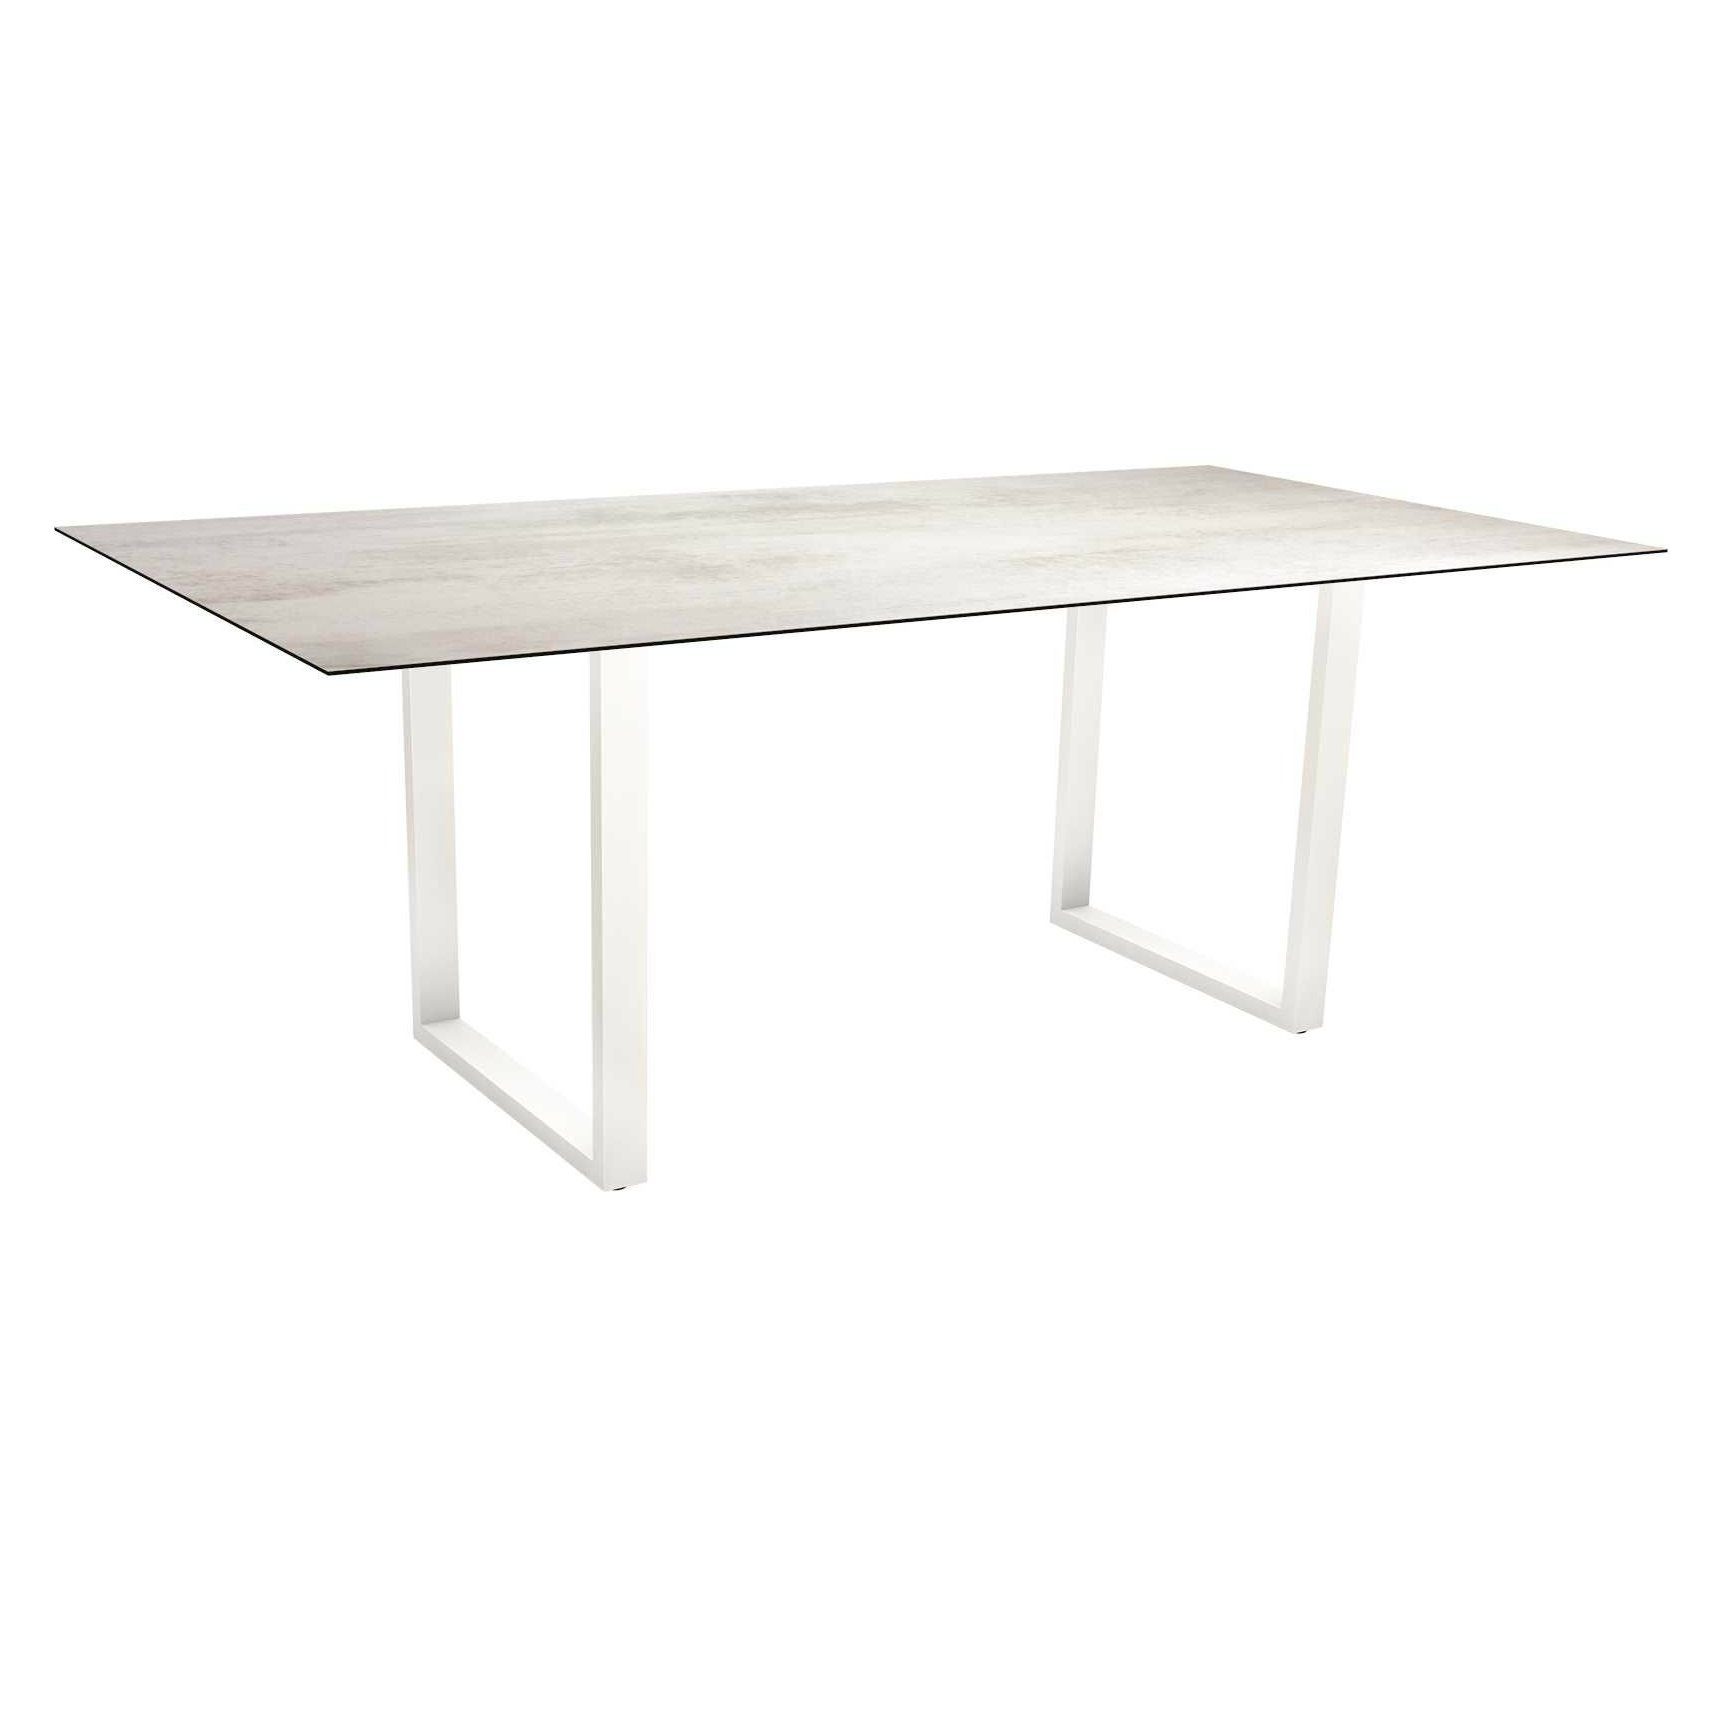 Stern Kufentisch, Maße: 200x100x73 cm, Gestell Aluminium weiß, Tischplatte HPL Zement hell